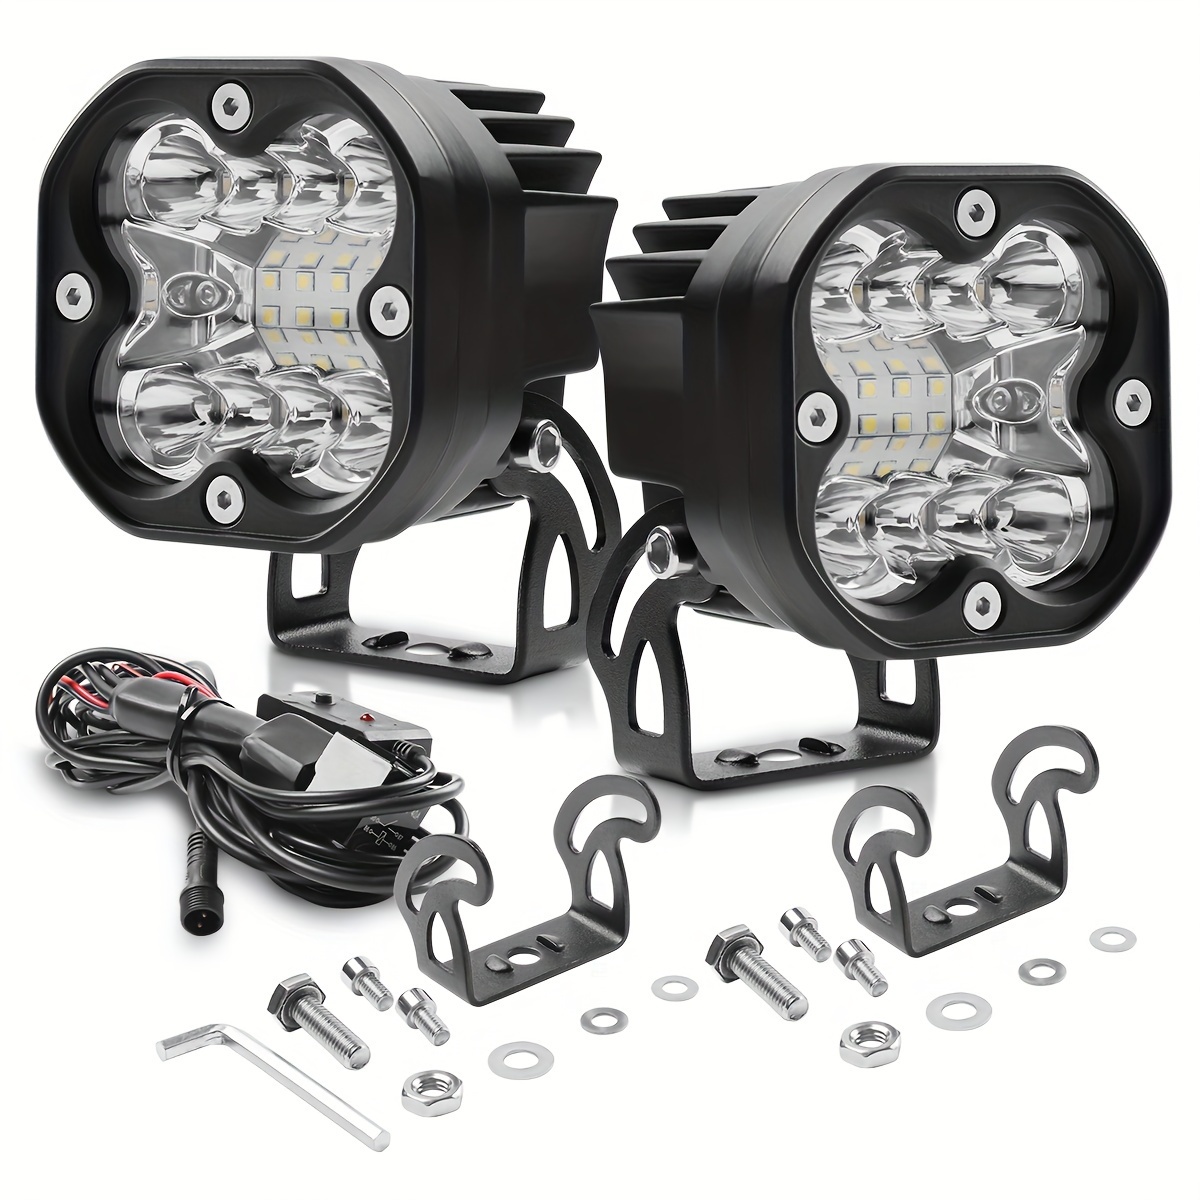 16 LED Arbeitsscheinwerfer Scheinwerfer Lamp 12V 24V Für PKW LKW